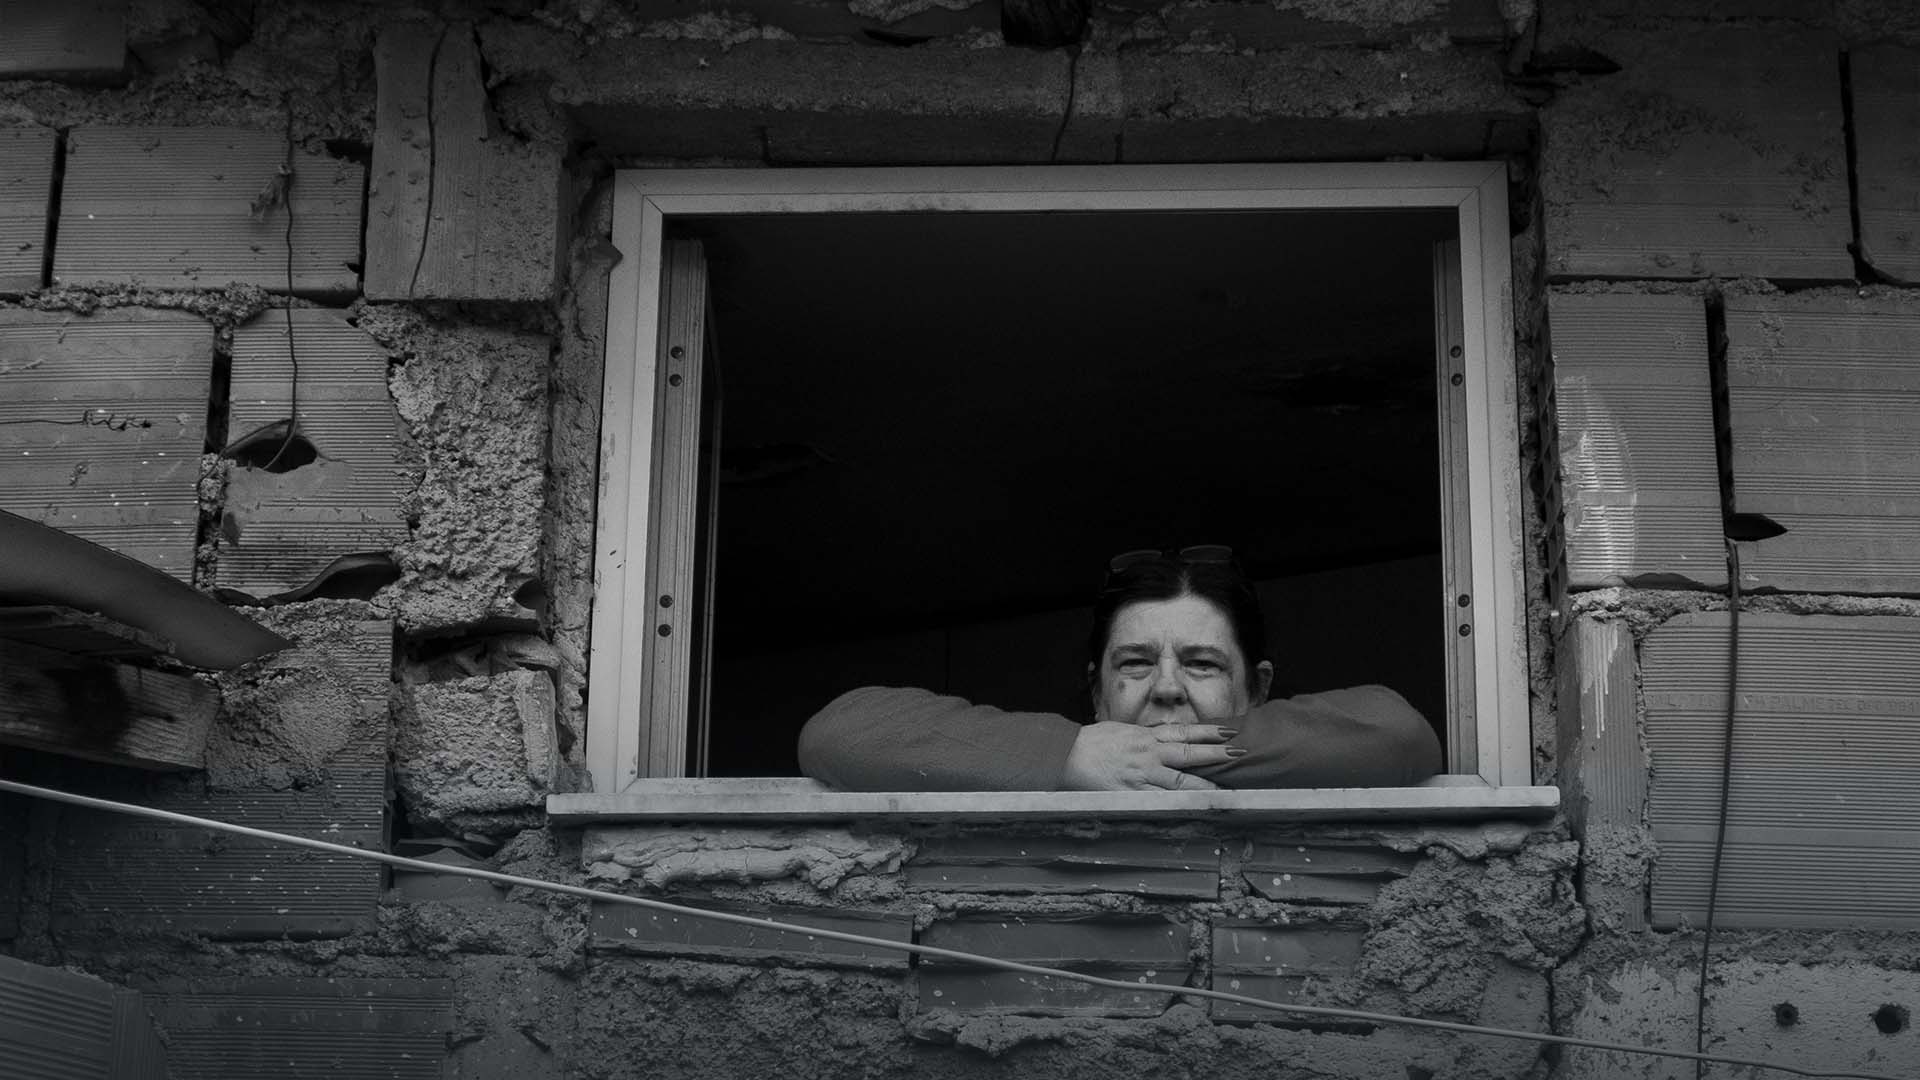 Persone che cercano di vivere con dignità nelle baracche di Messina